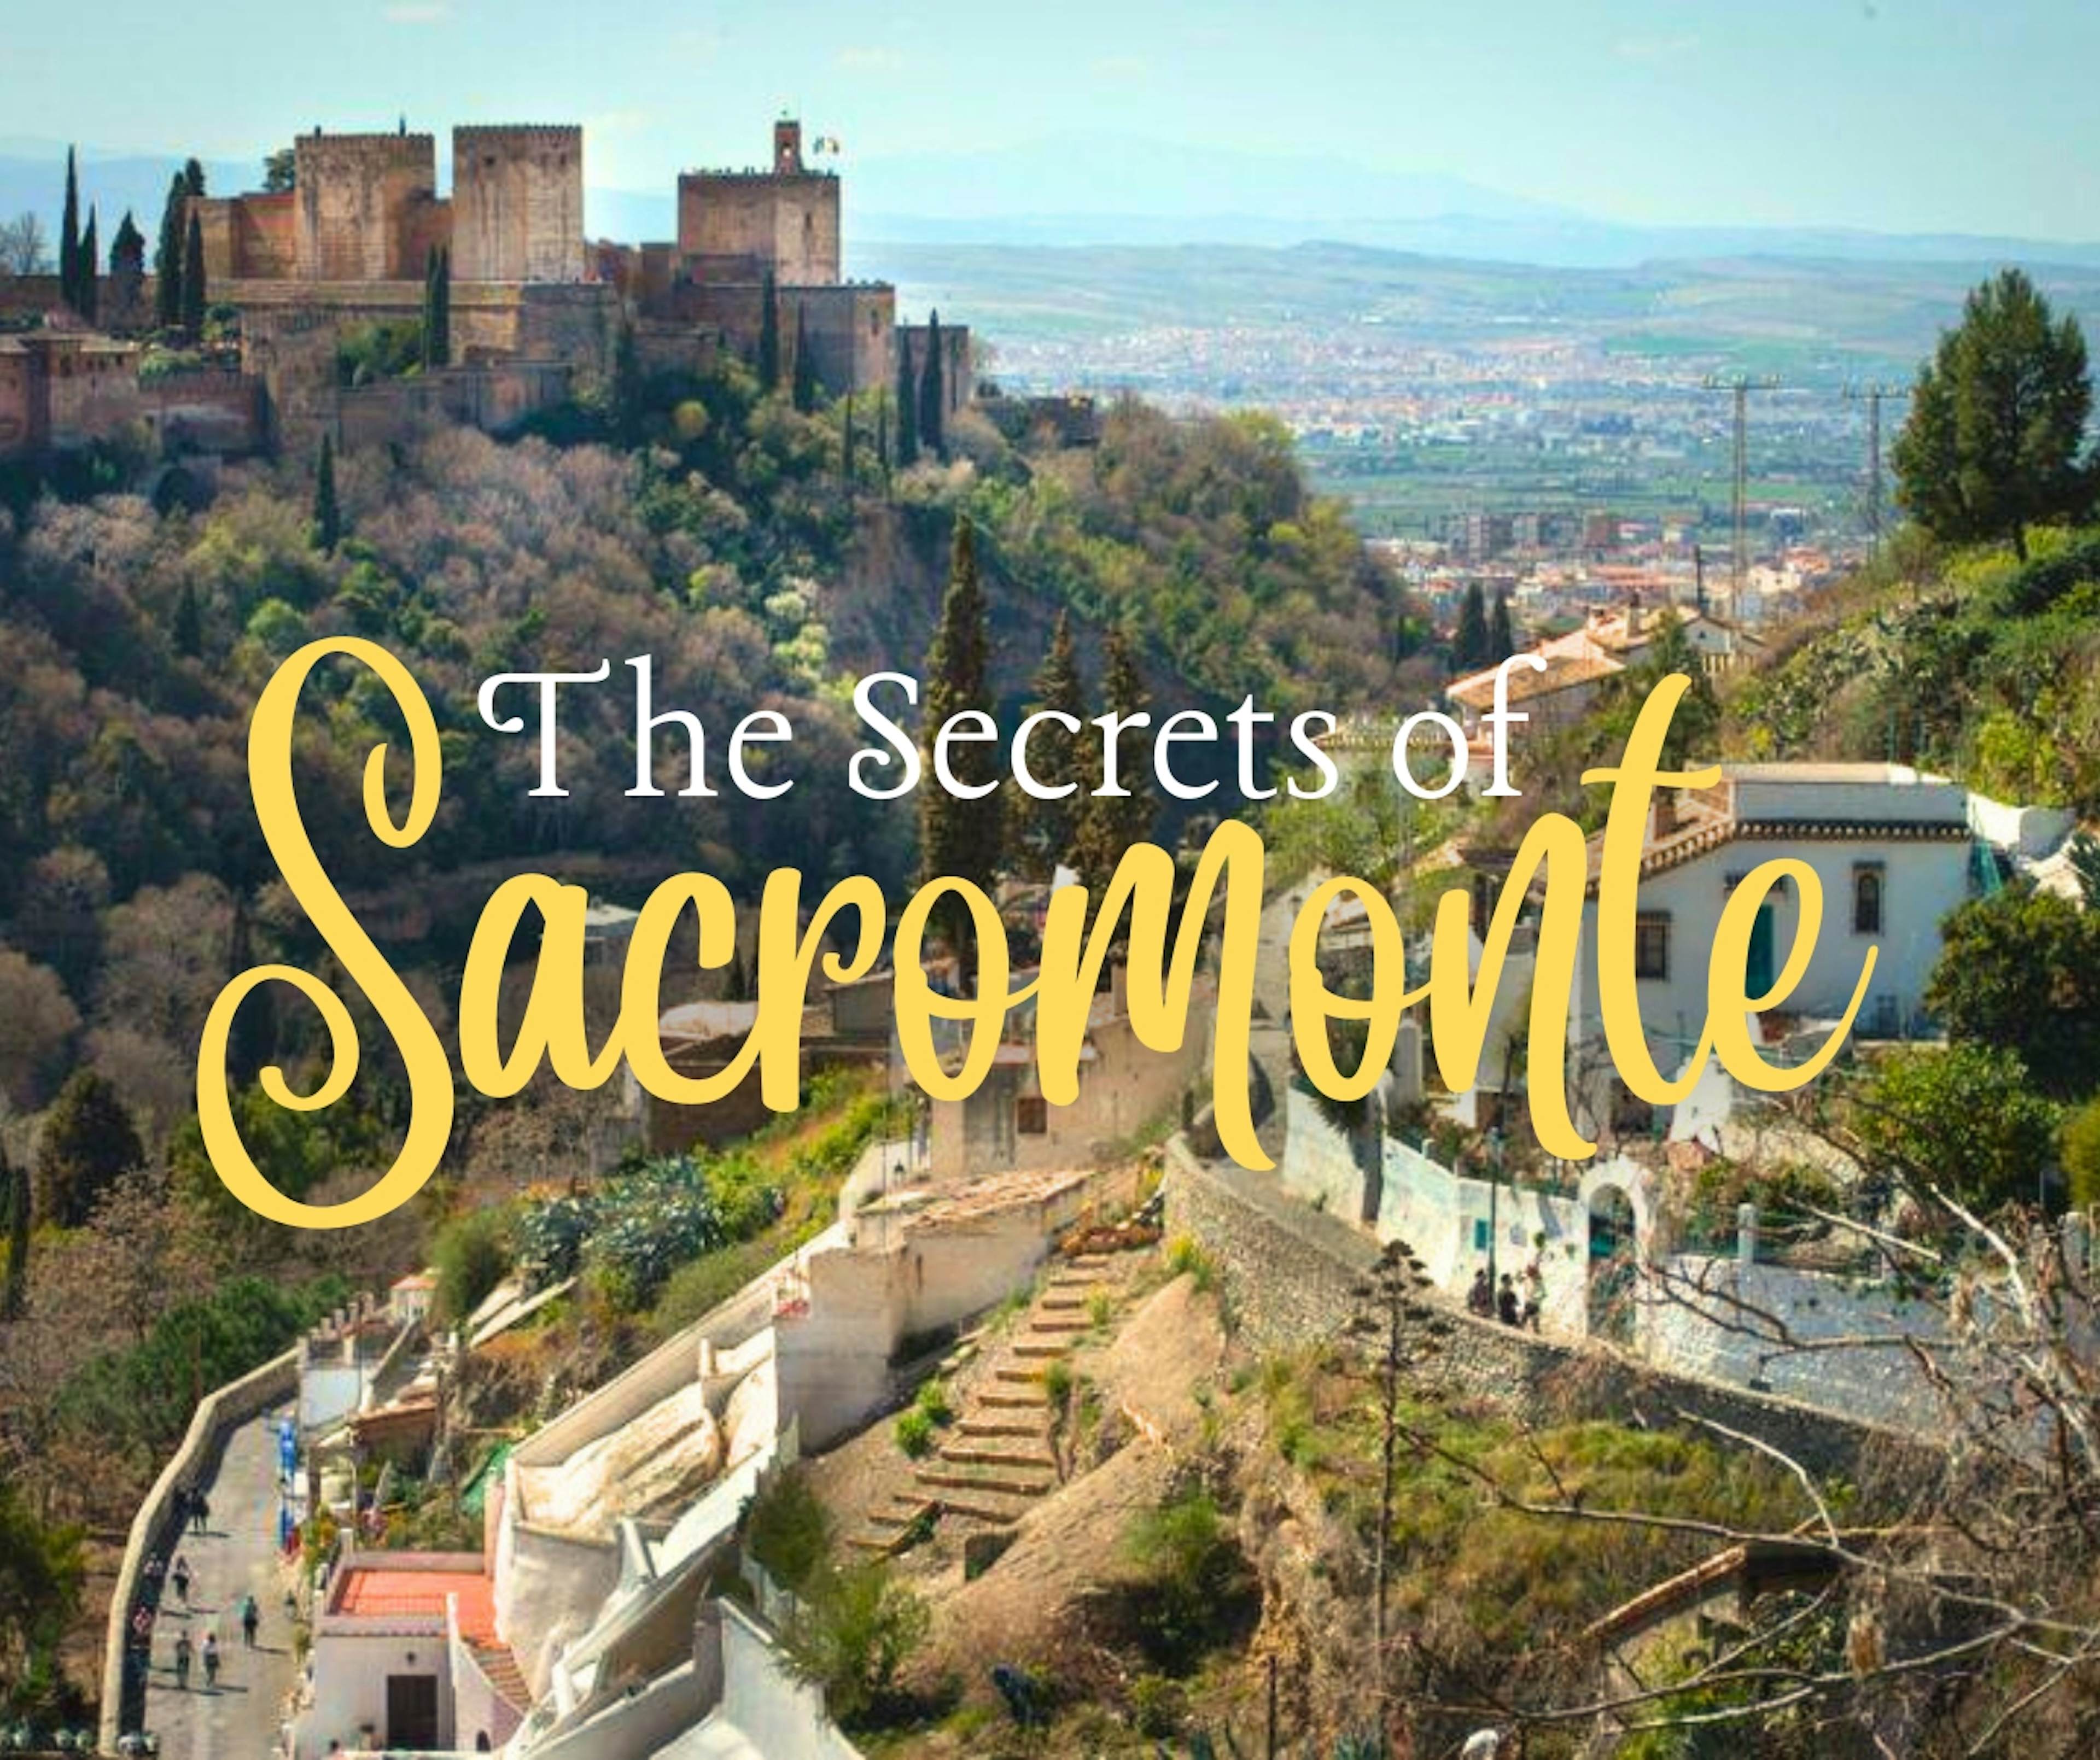 Secrets of Sacromonte, Granada